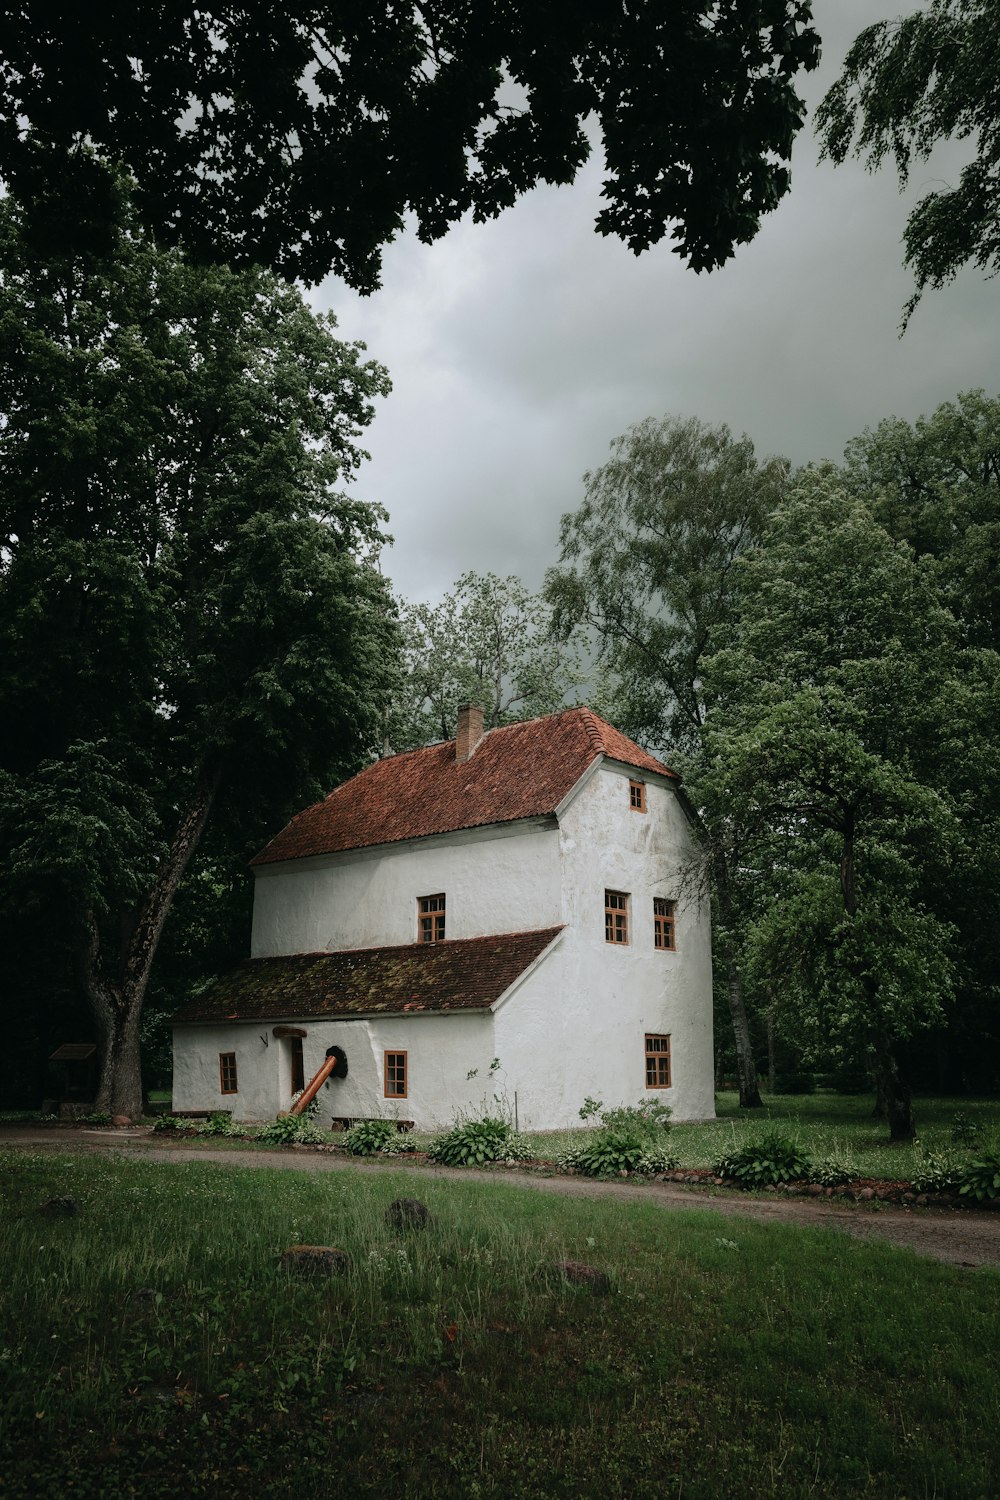 Weißes und braunes Betonhaus in der Nähe von grünen Bäumen unter weißen Wolken tagsüber